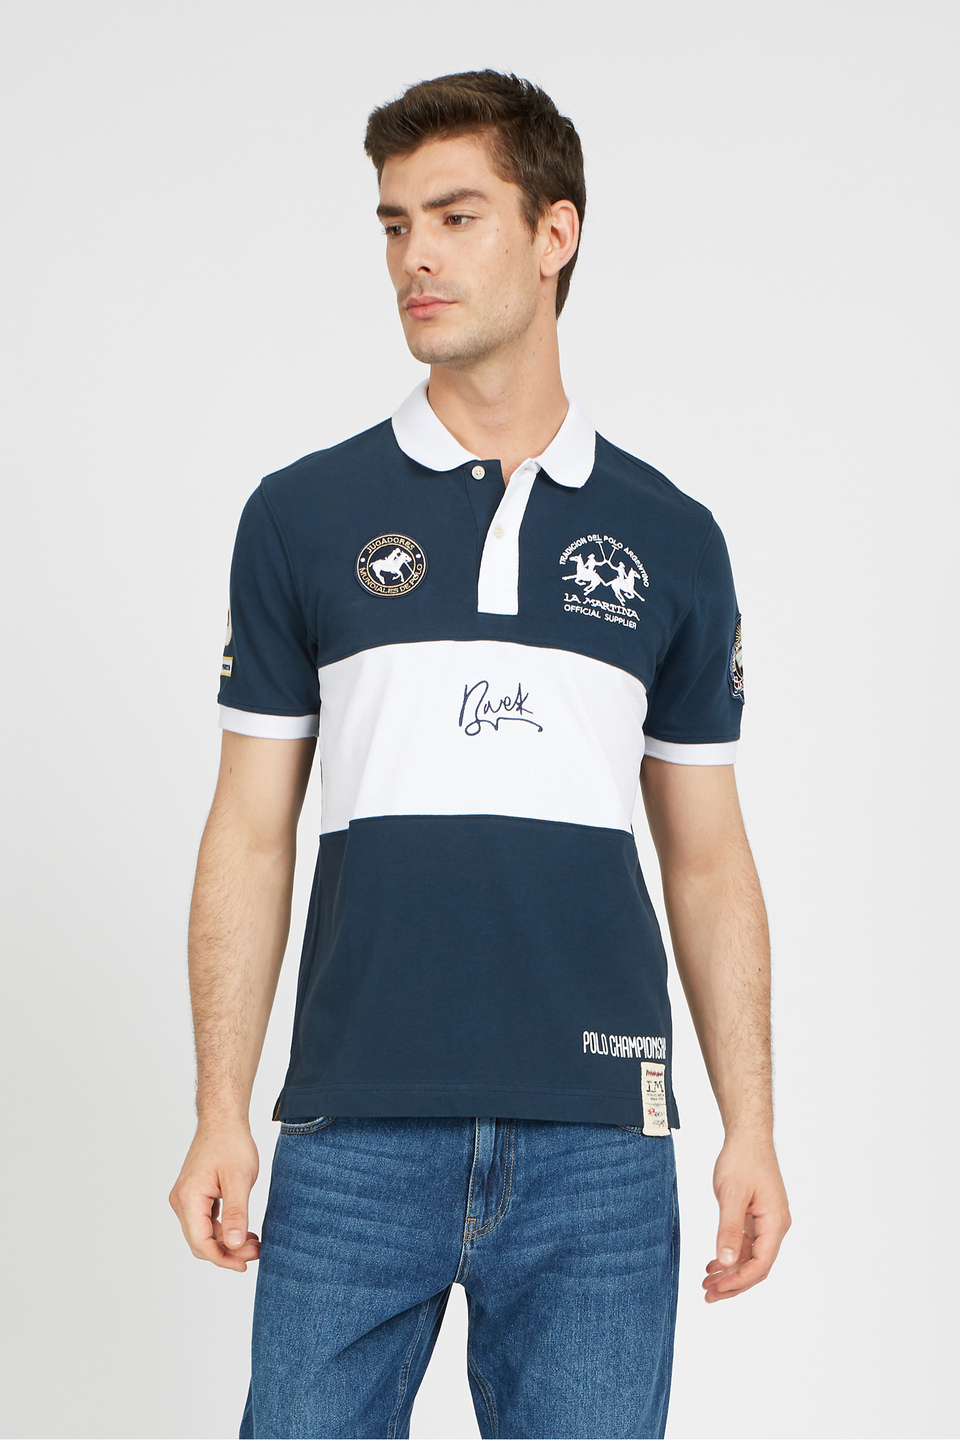 Regular fit 100% cotton short-sleeved polo shirt for men - Velibor | La Martina - Official Online Shop